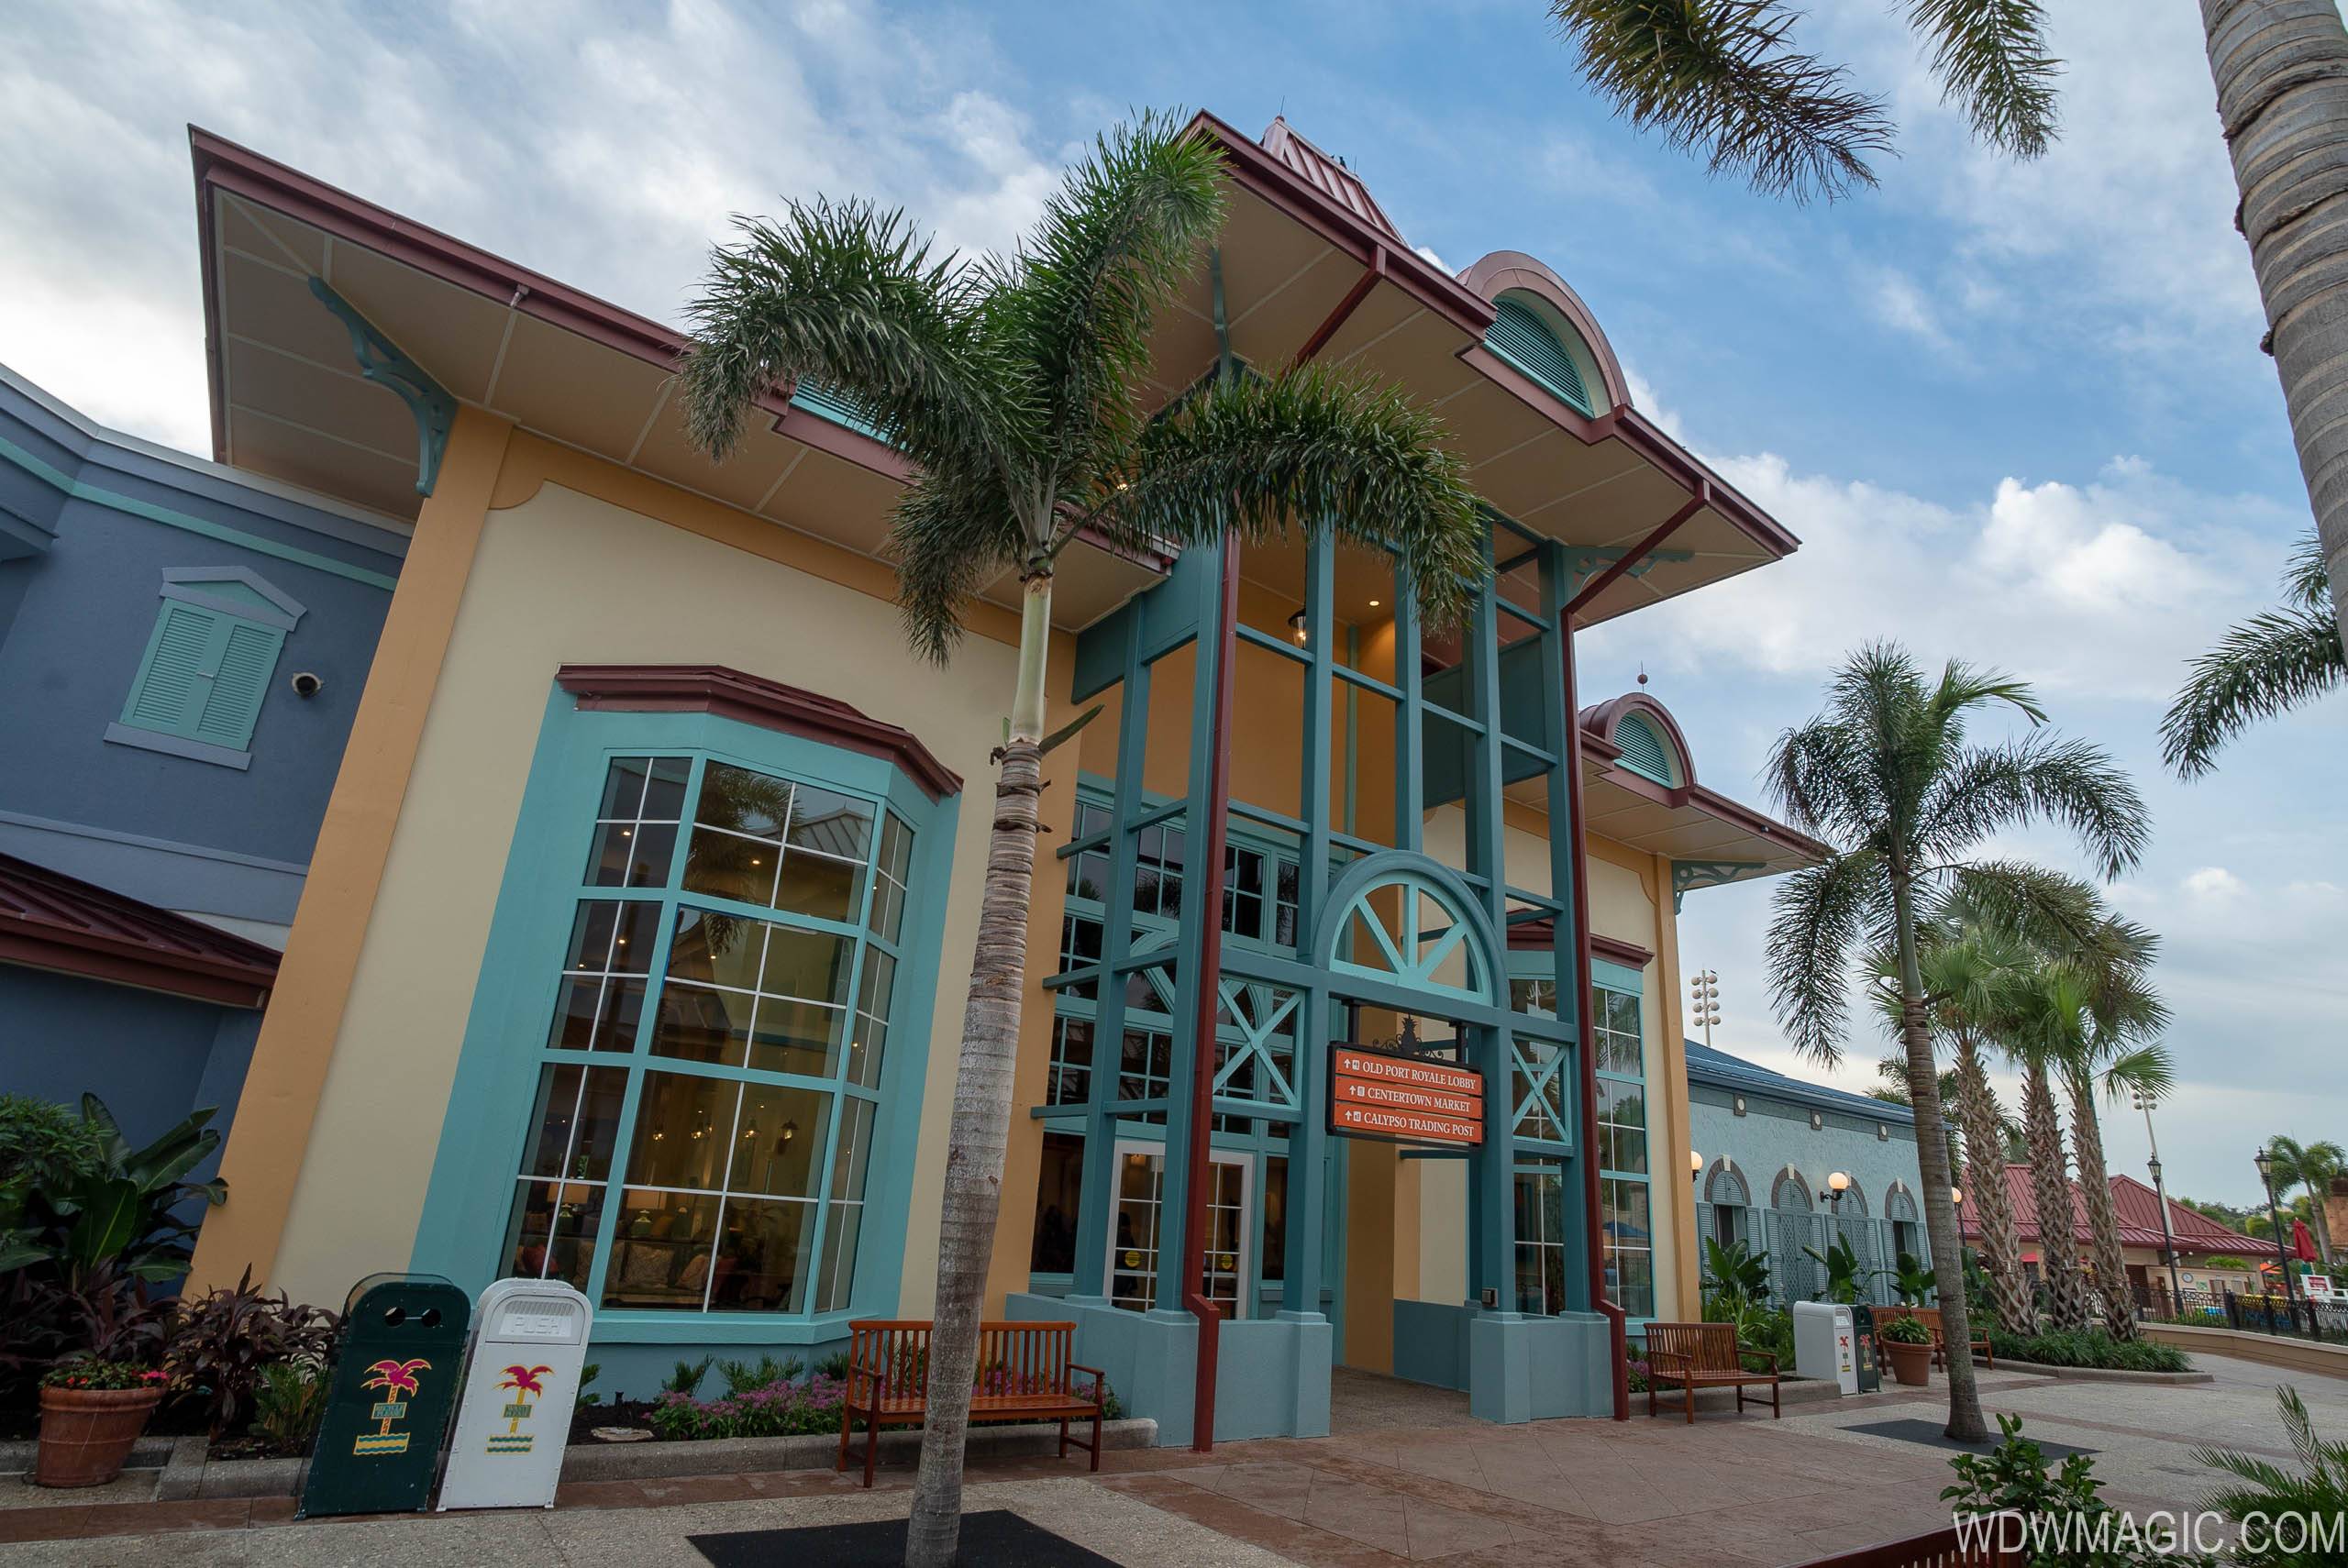 Two leisure pools closed for refurbishment at Disney's Caribbean Beach Resort